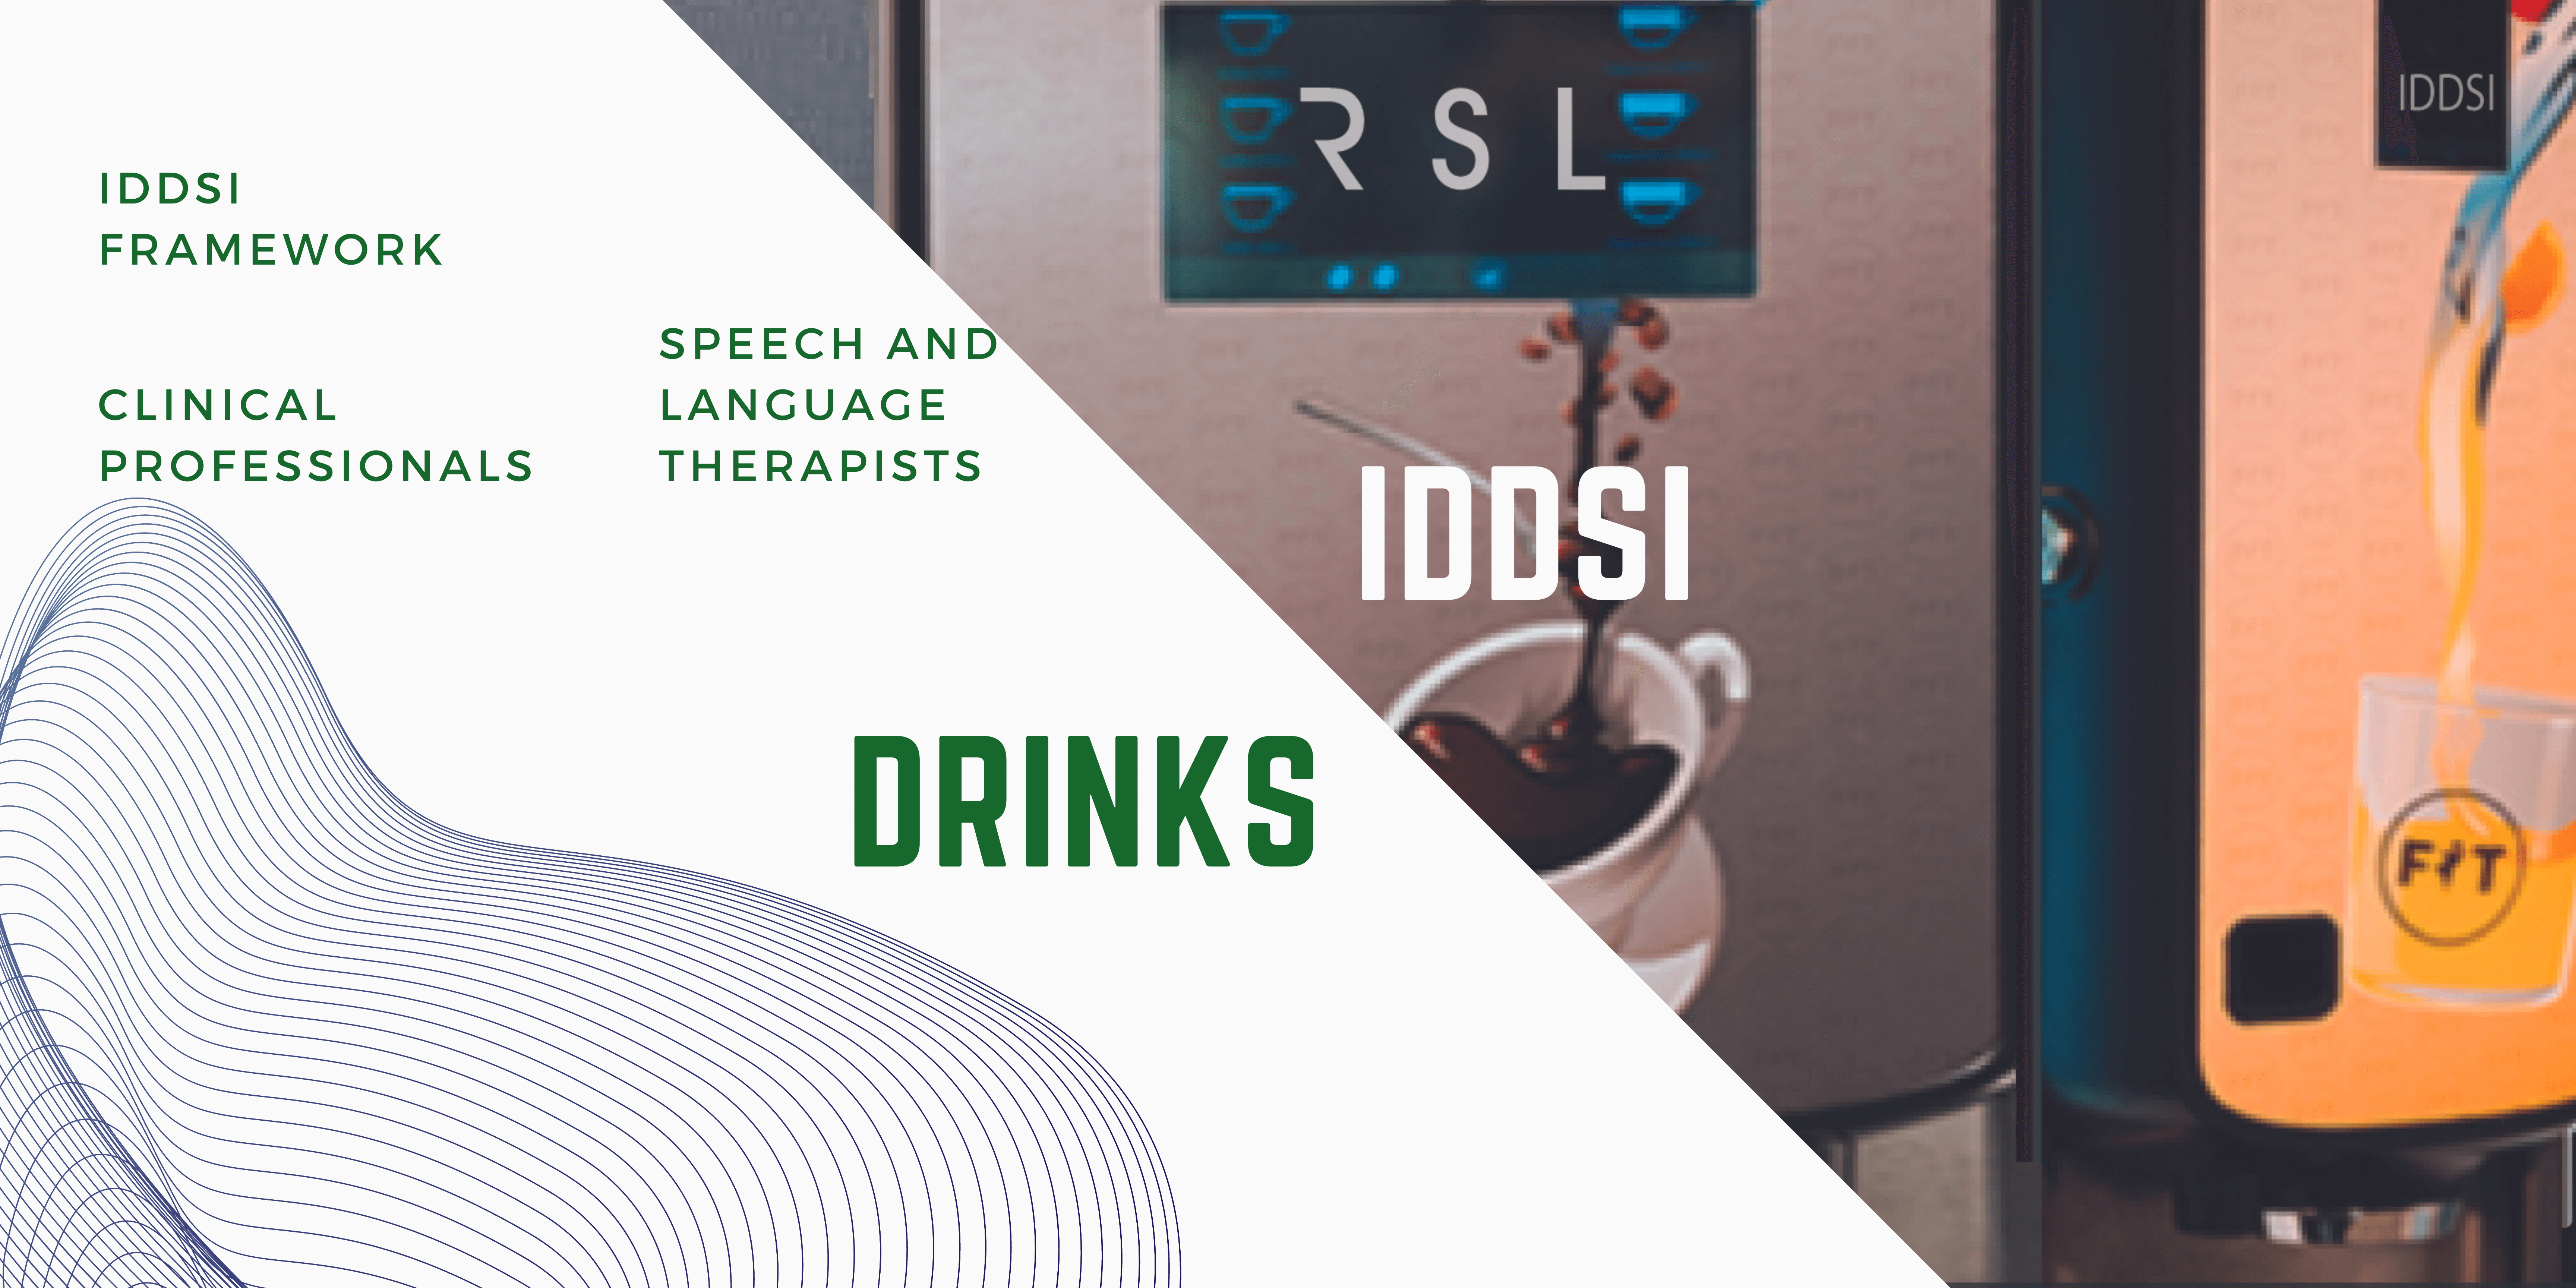 IDDSI Drinks